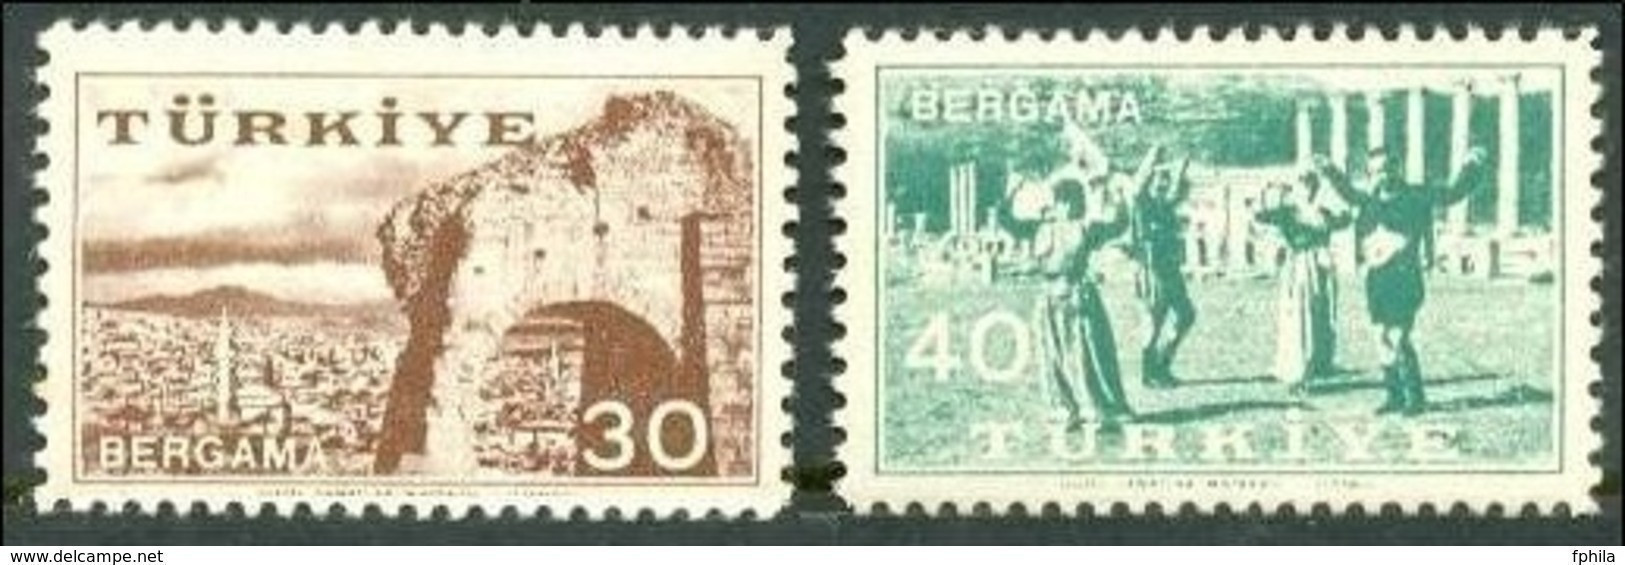 1957 TURKEY THE KERMIS OF PERGAMUS MNH ** - Unused Stamps